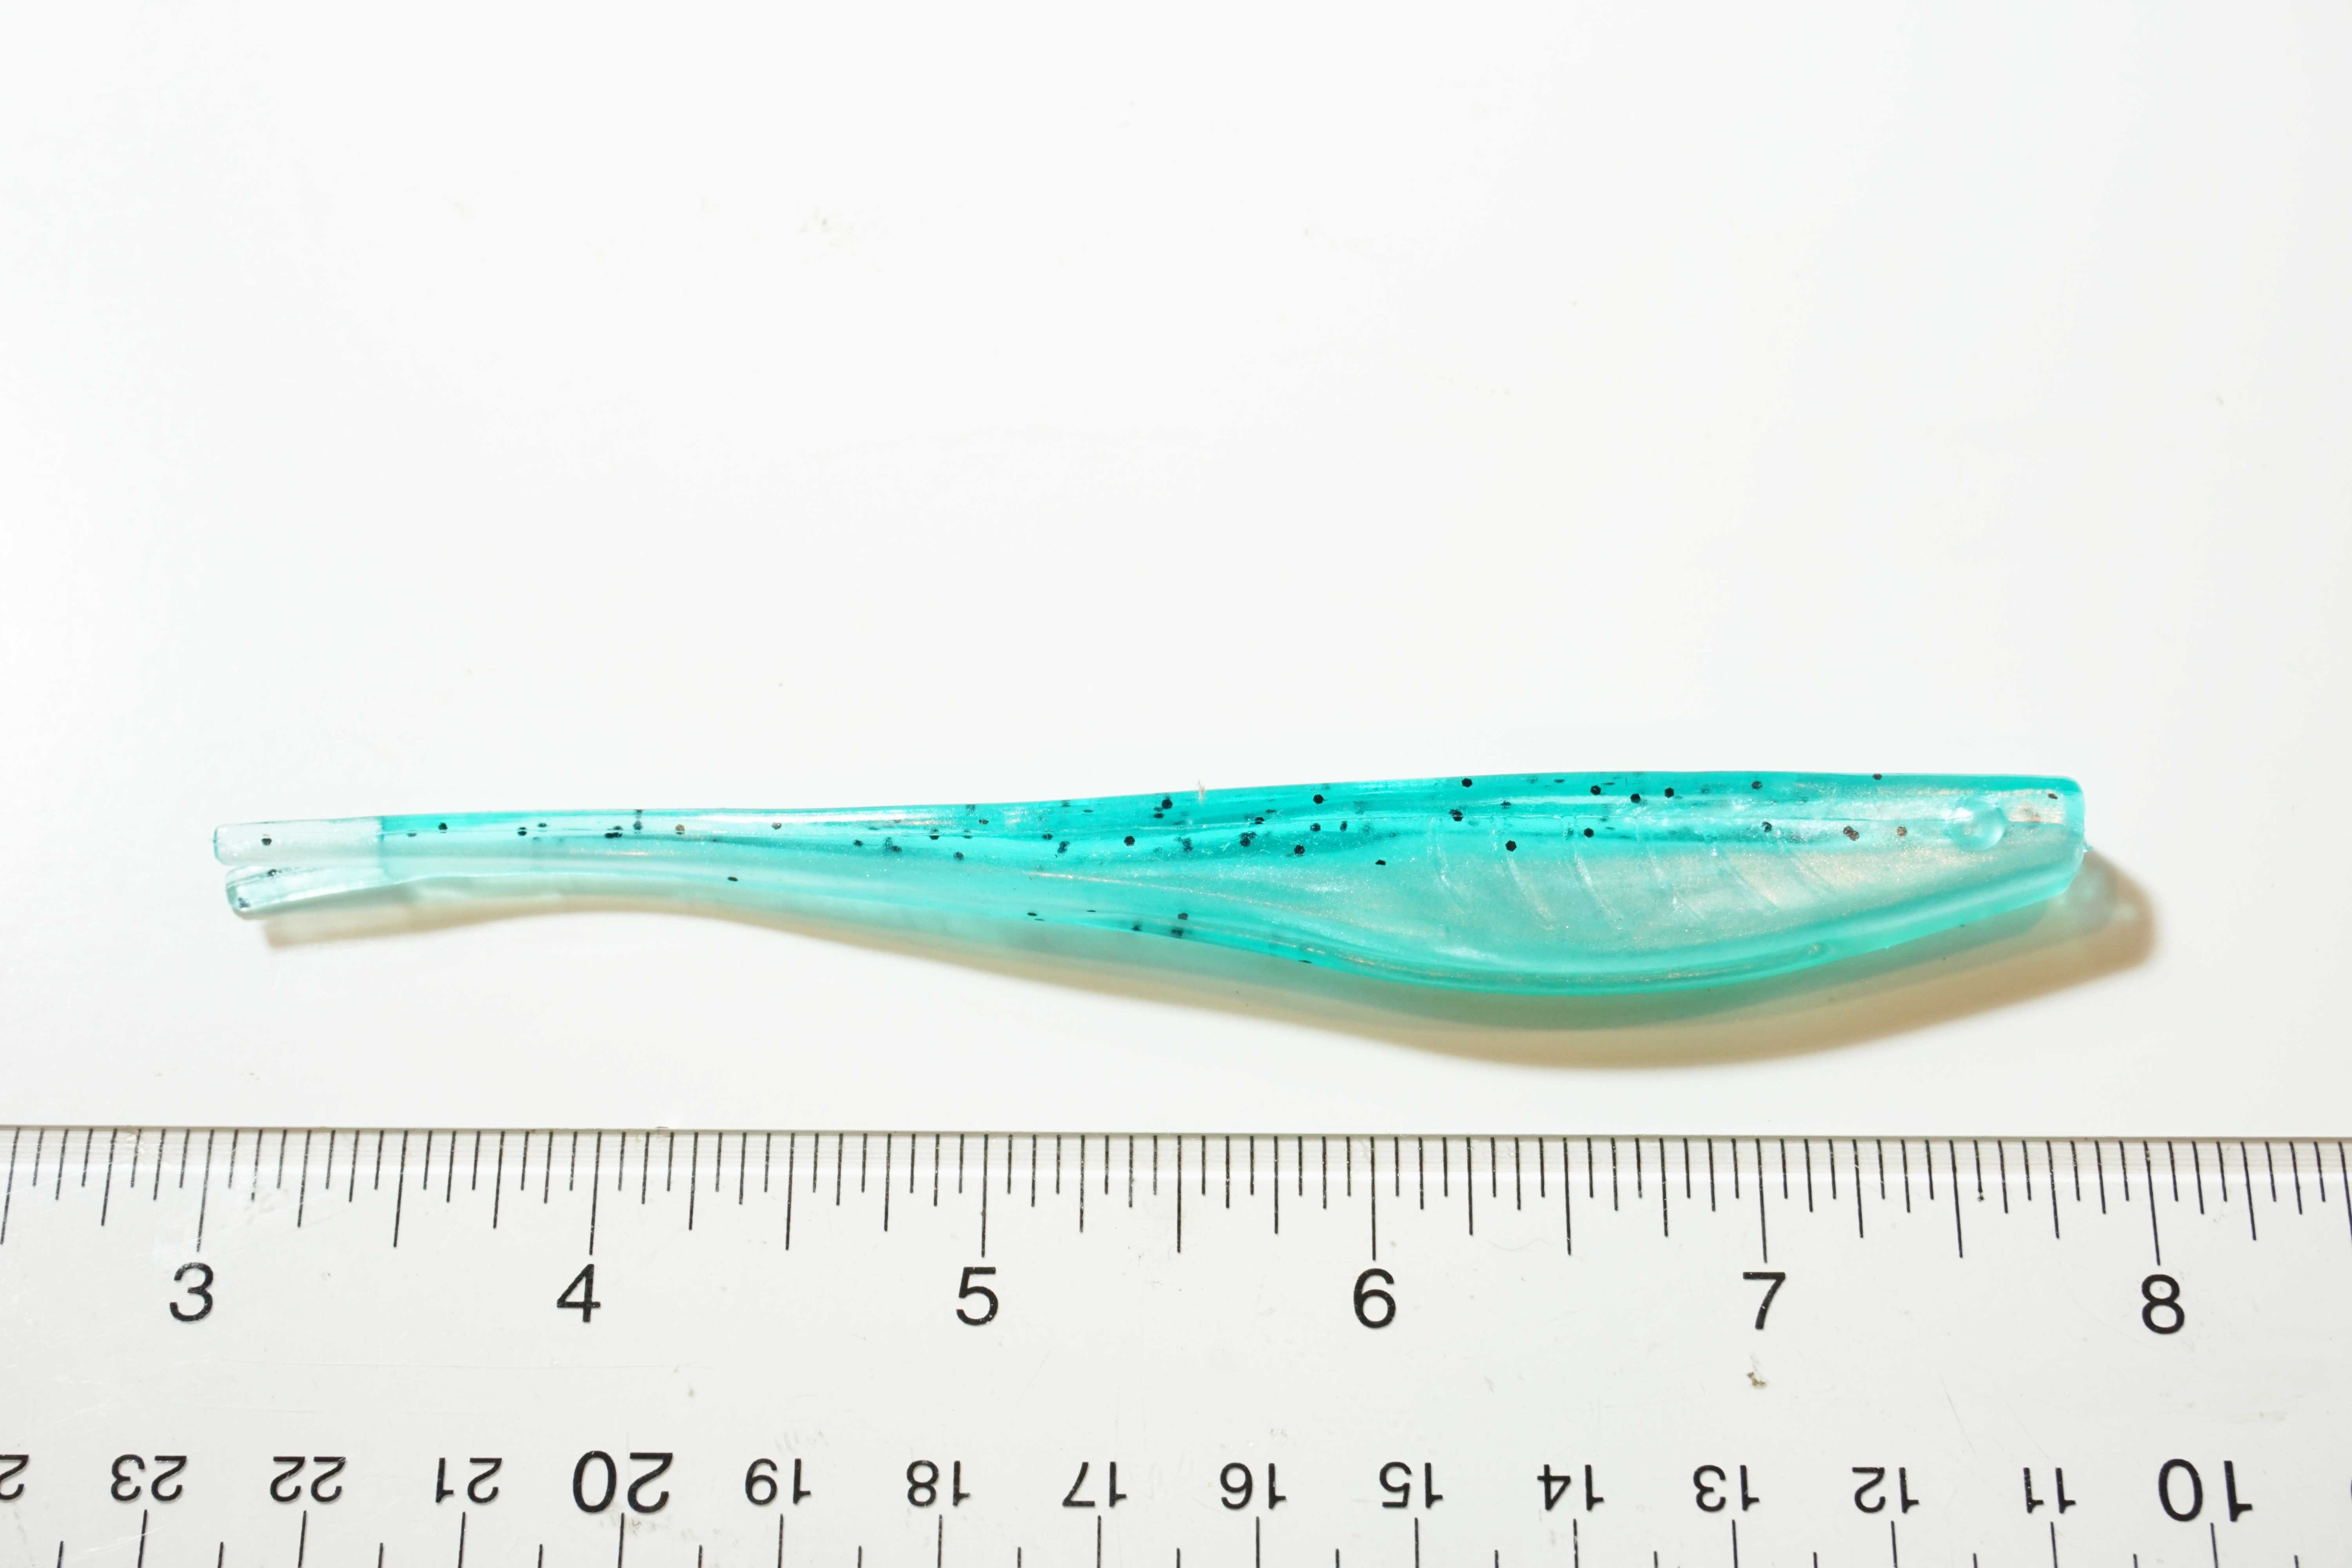 Soft Plastic Split Tail Jerk Bait 5" Aqua/Glitter